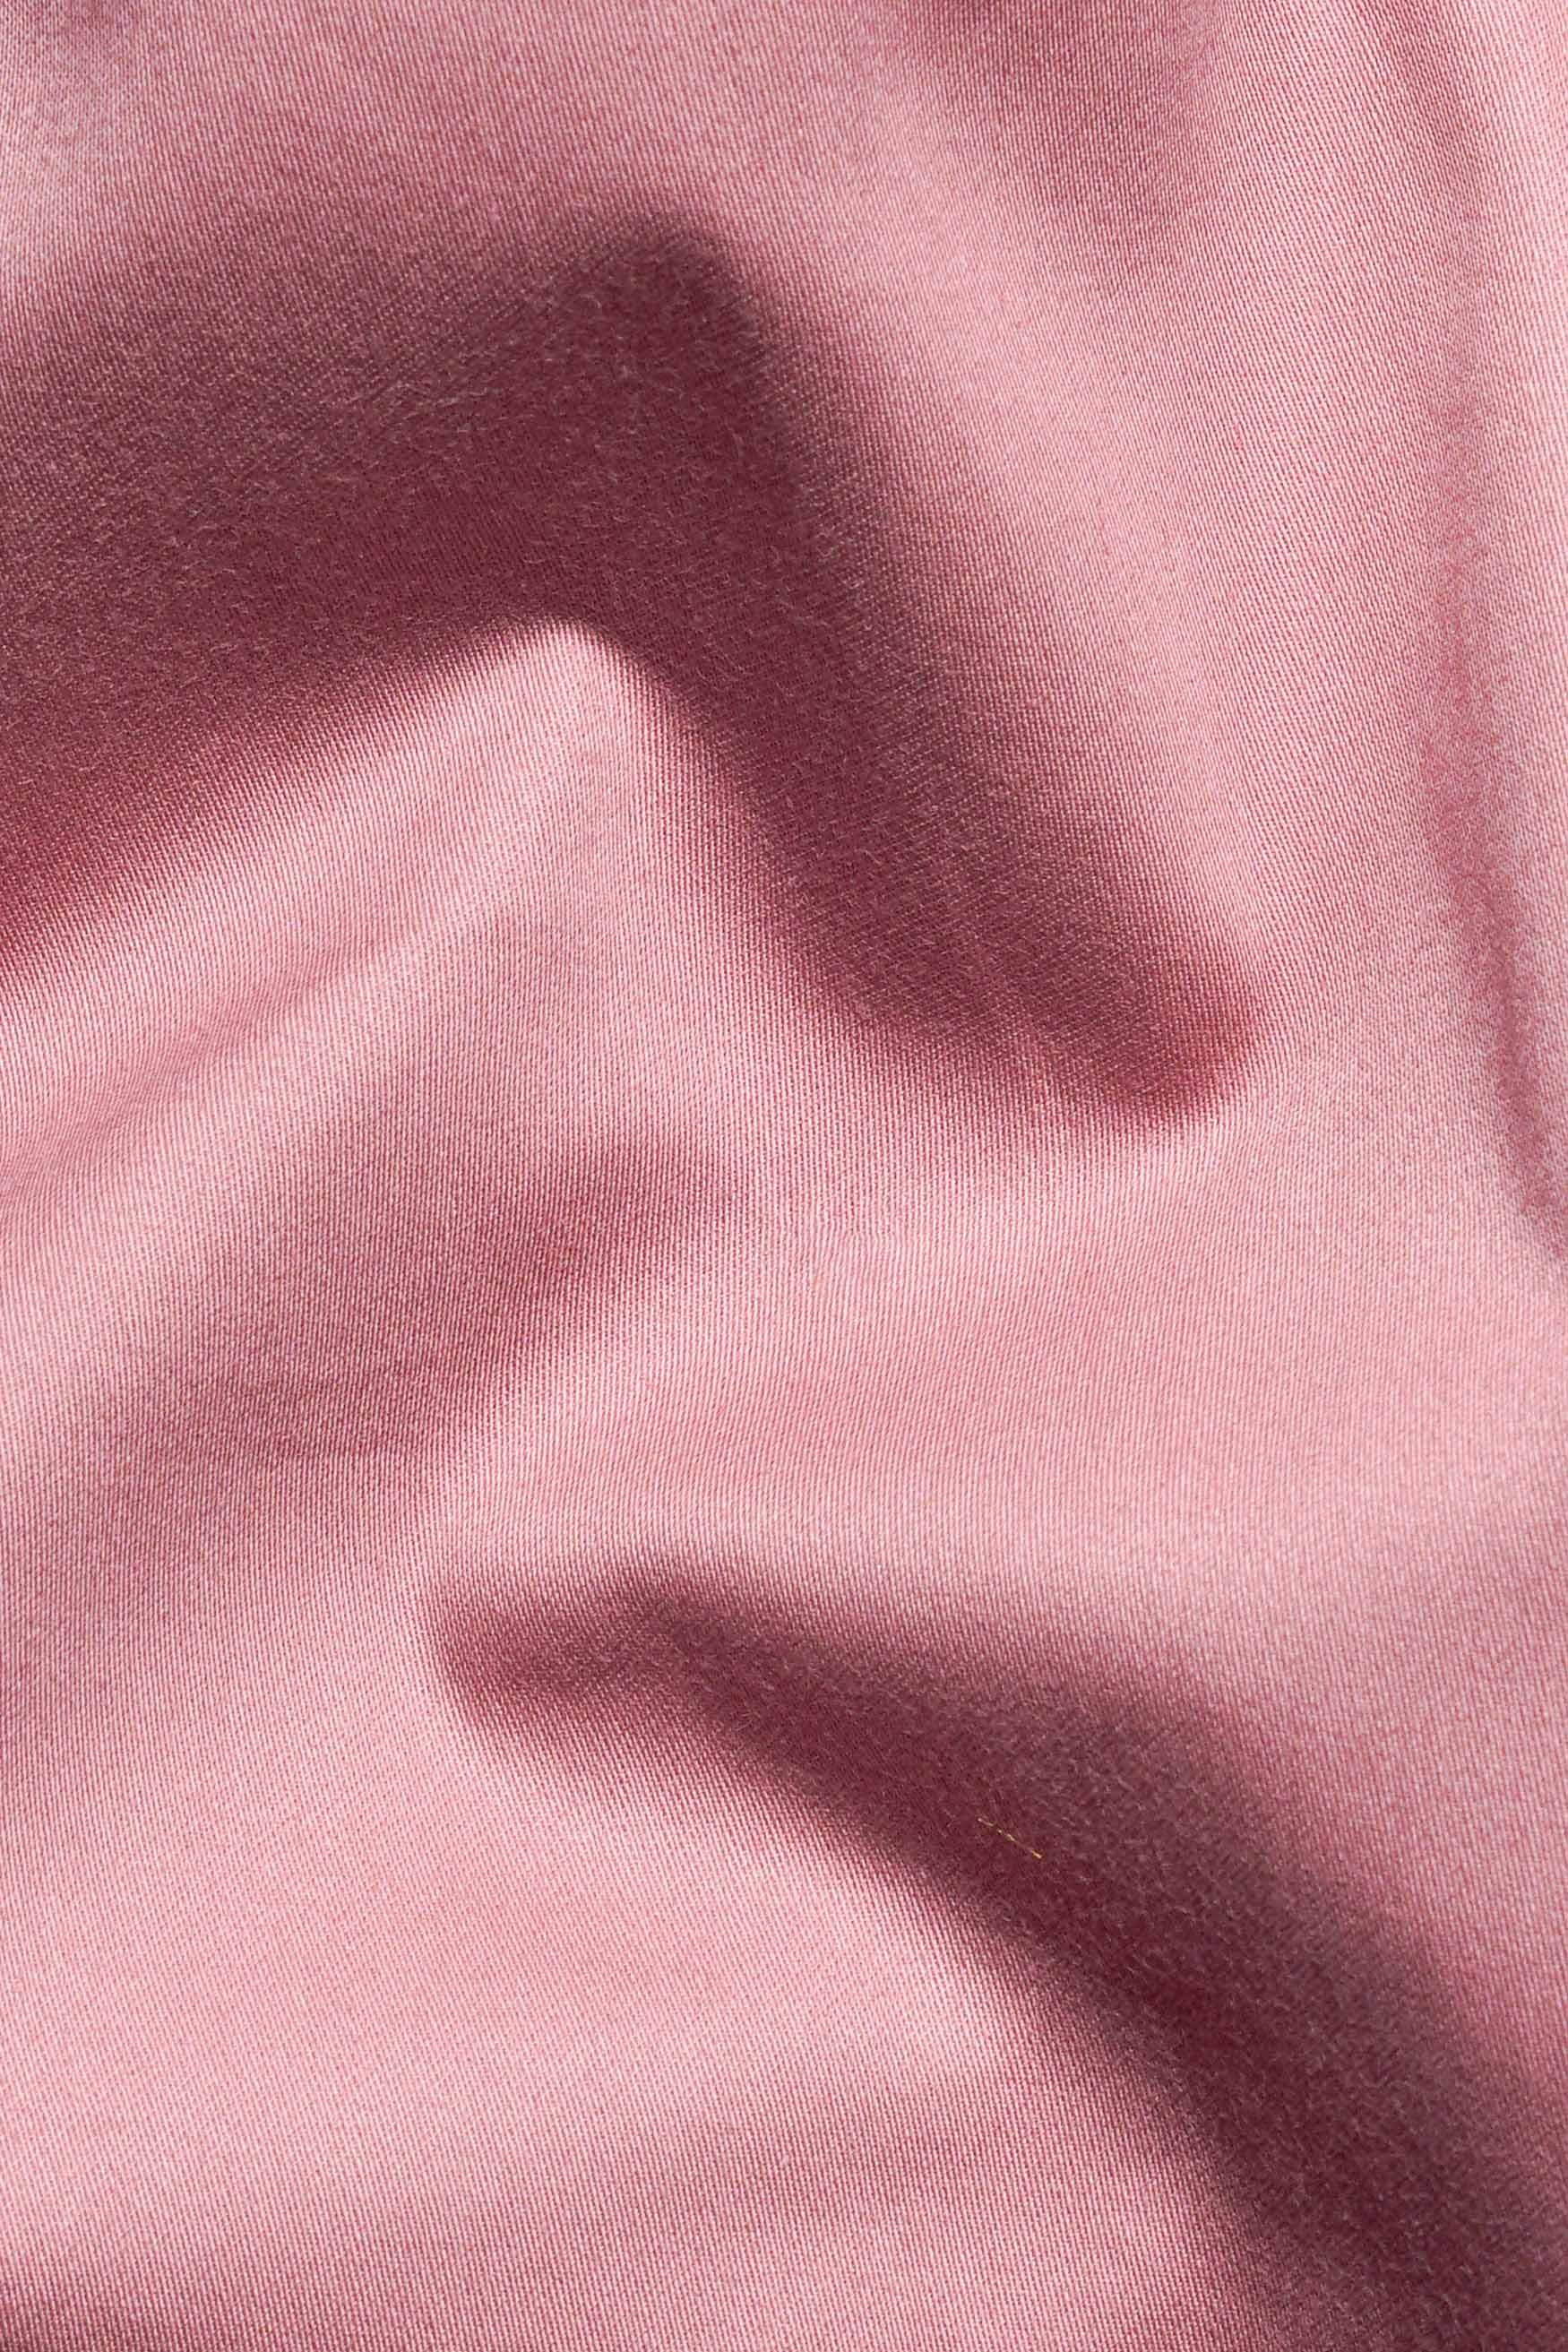 Shilo Pink Subtle Sheen Super Soft Premium Cotton Tuxedo Shirt